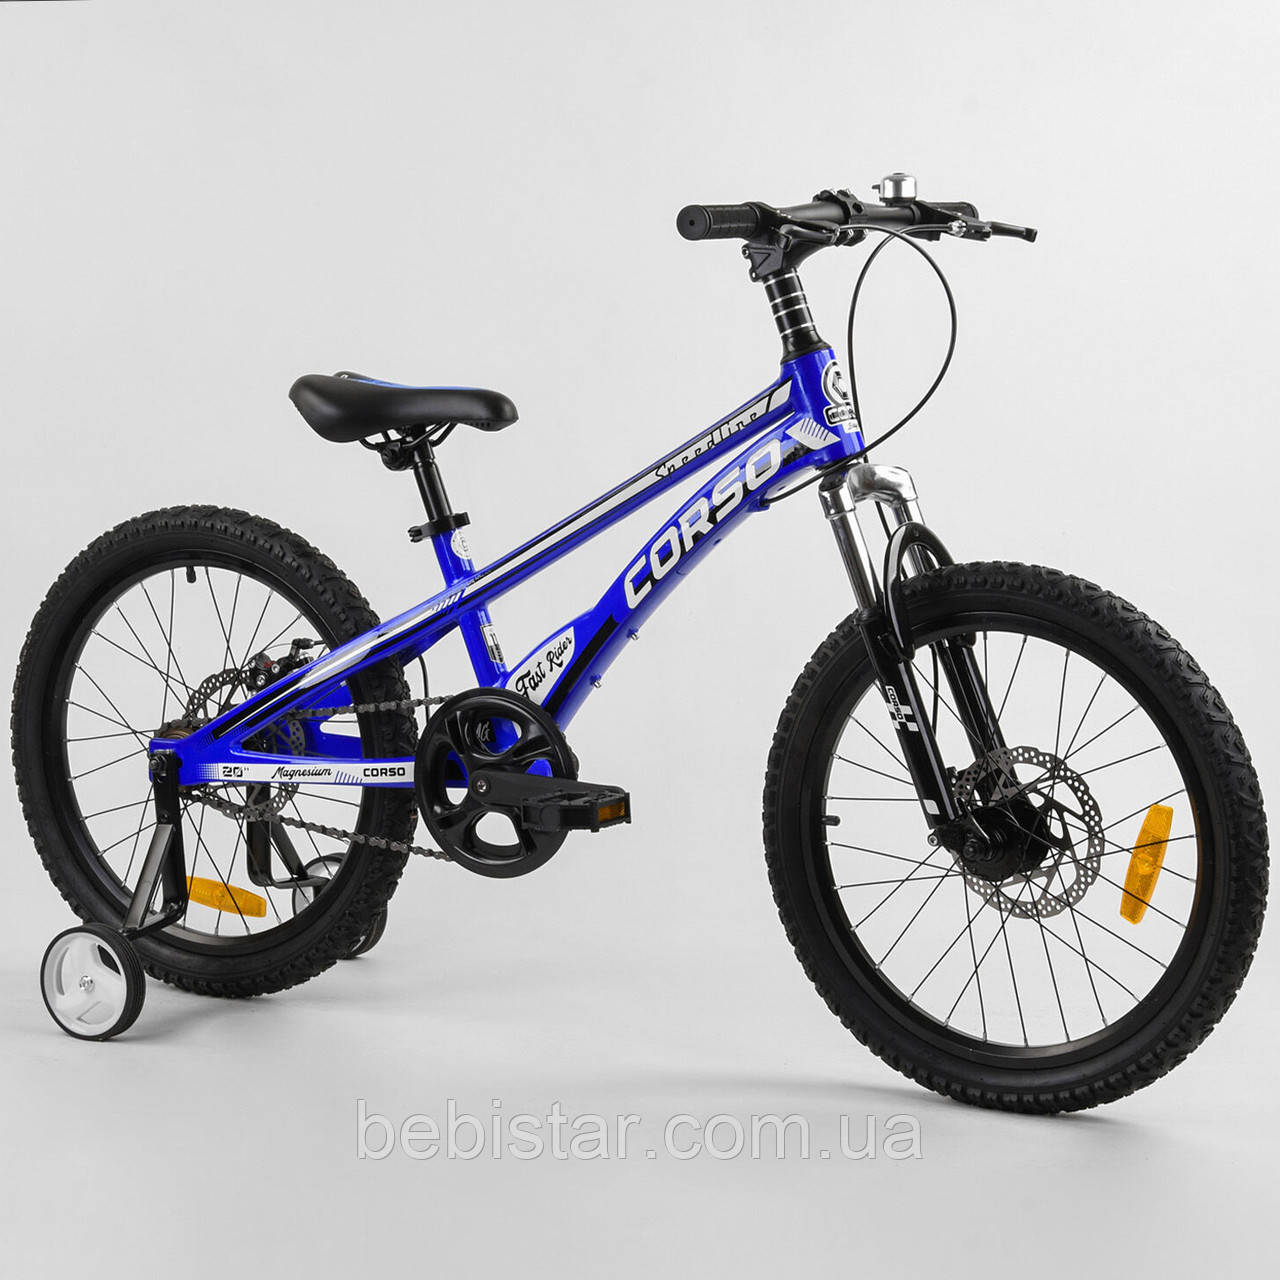 Дитячий спортивний велосипед одношвидкісний синій Corso 20" Speedline" MG-39427 з додатковими колесами